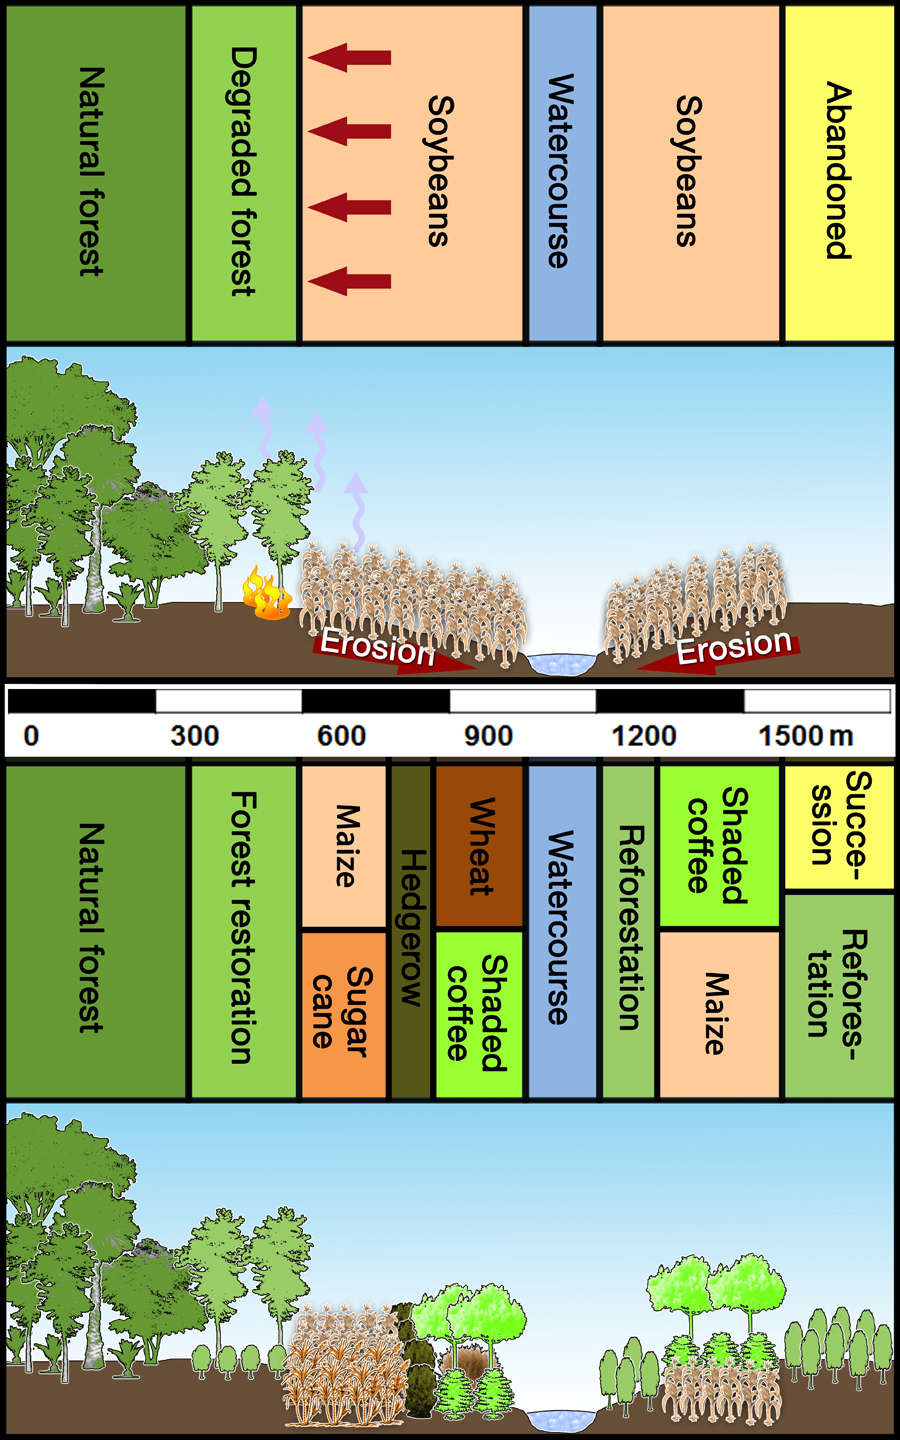 Das Diagram stellt Monokultur und differenzierte Landnutzung gegenüber.